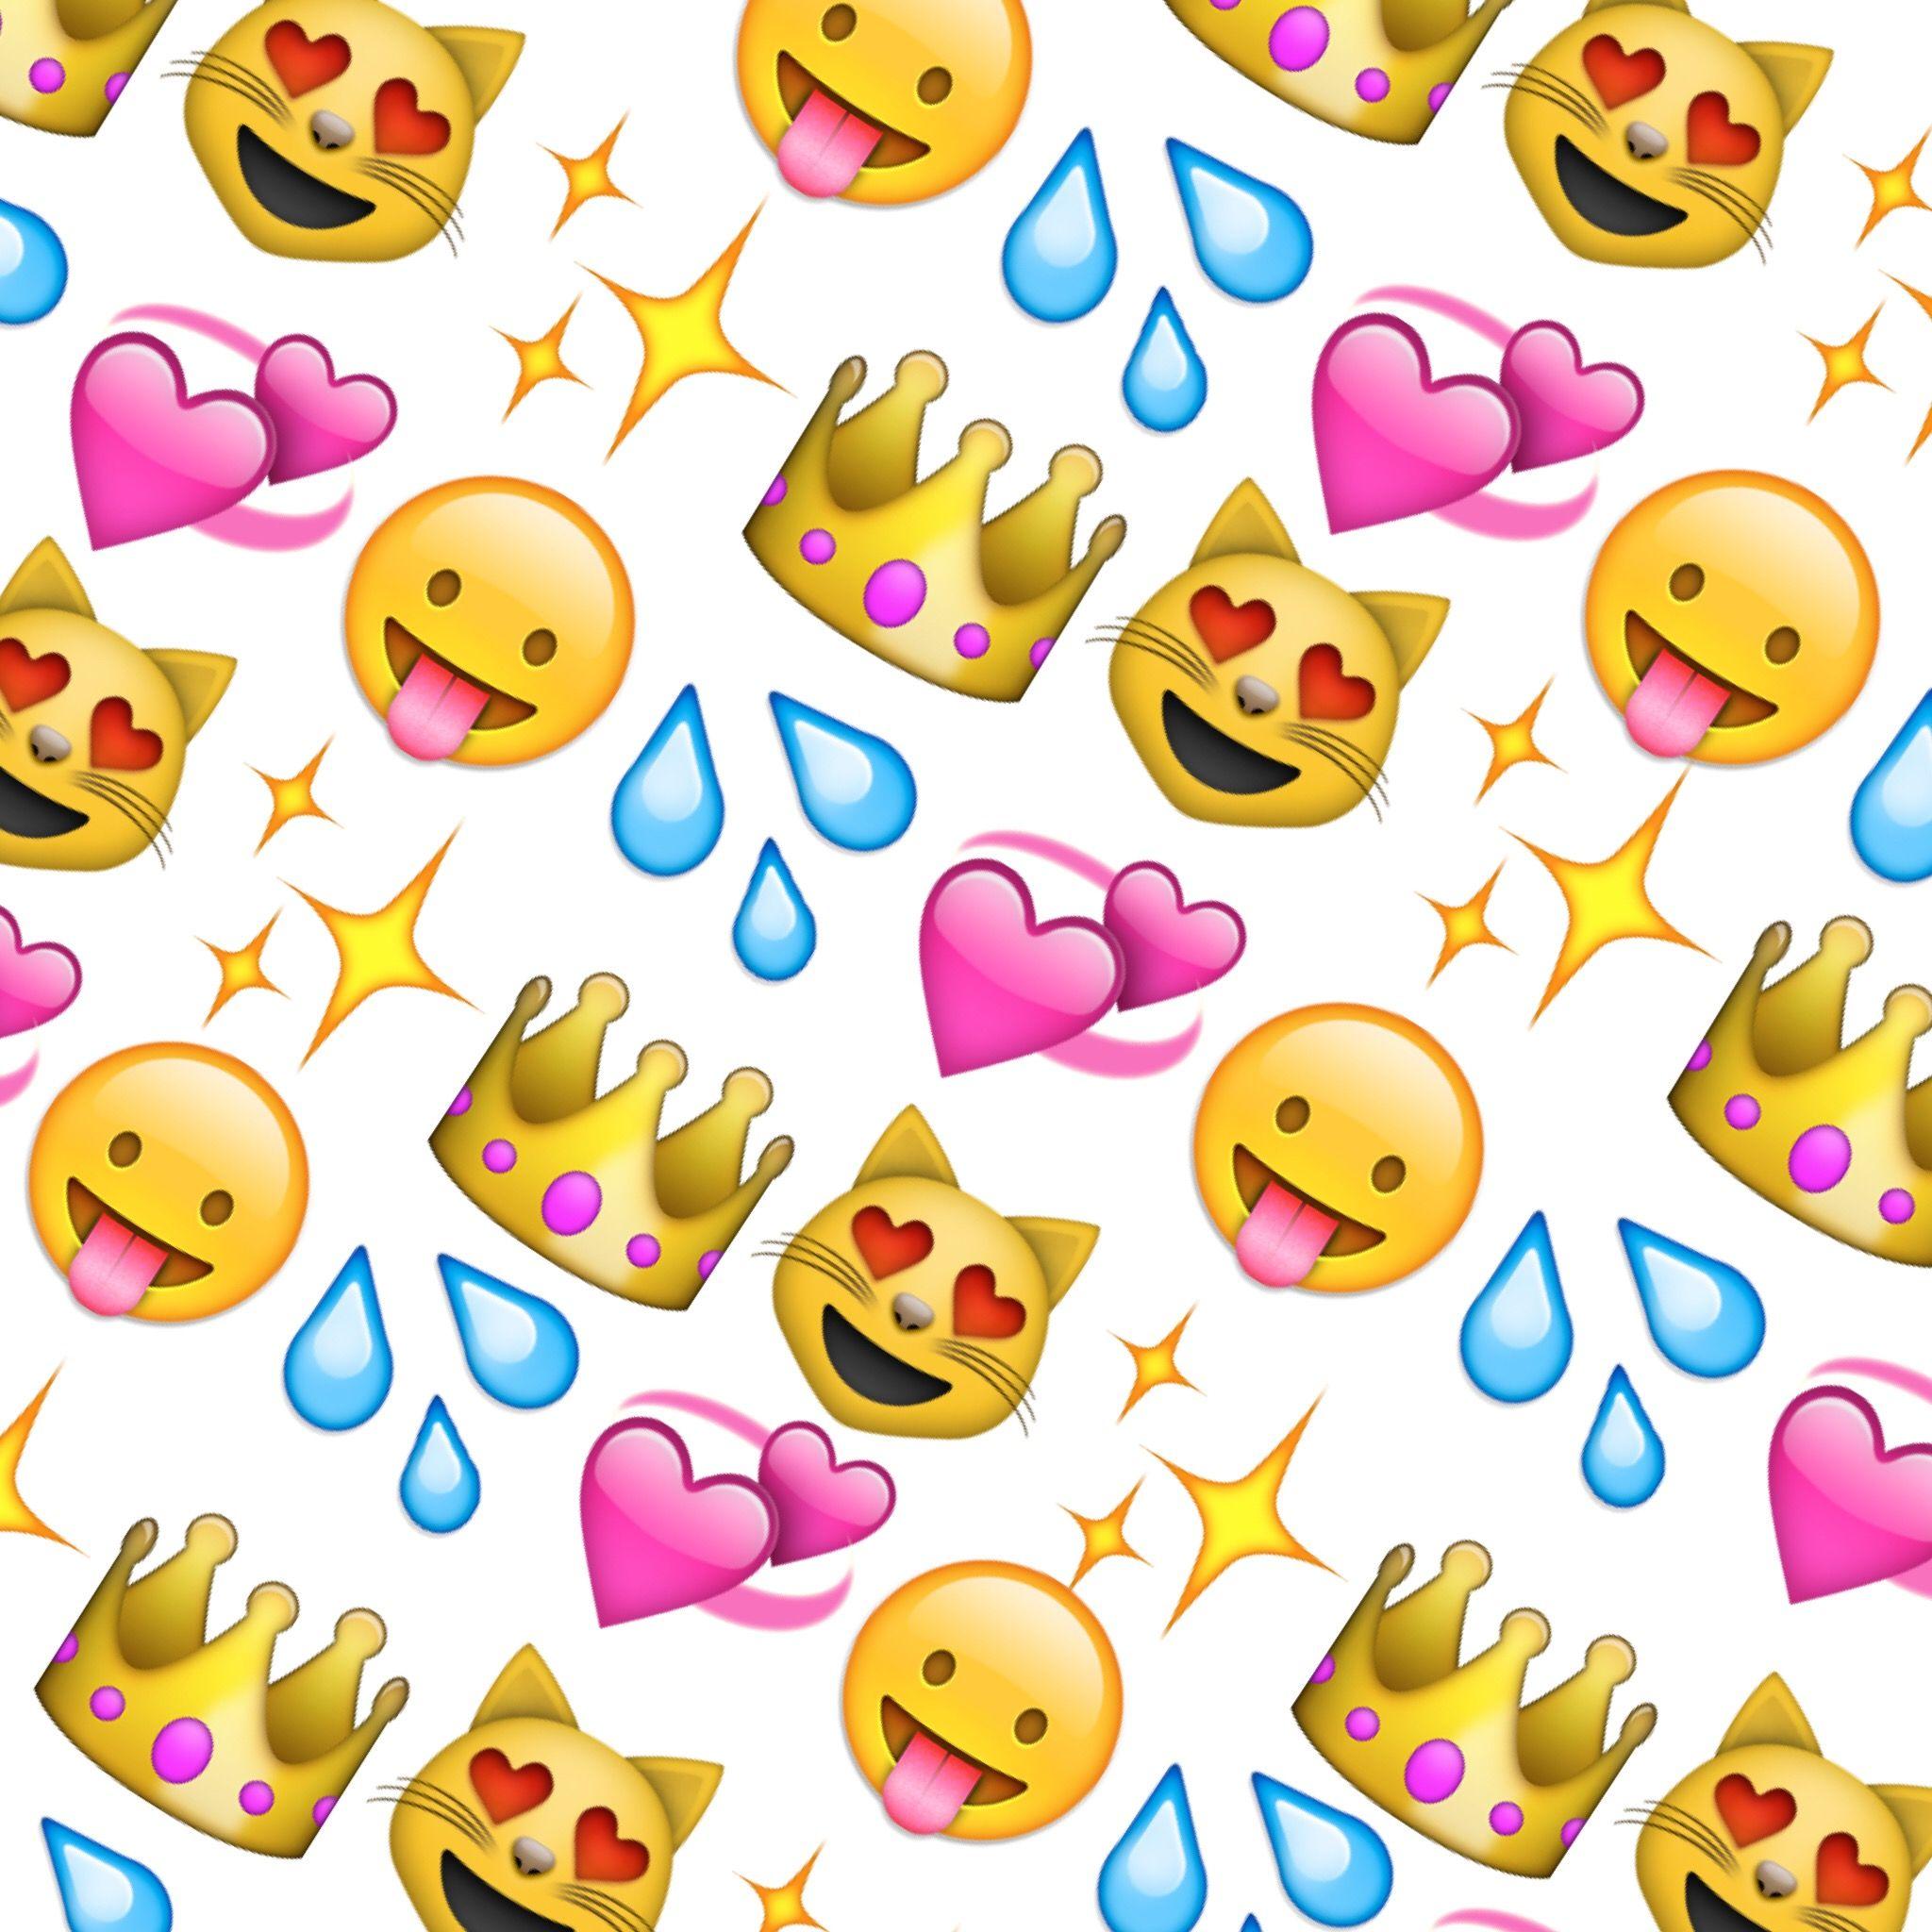 Queen emoji. Emoji wallpaper. Wallpaper and Queen